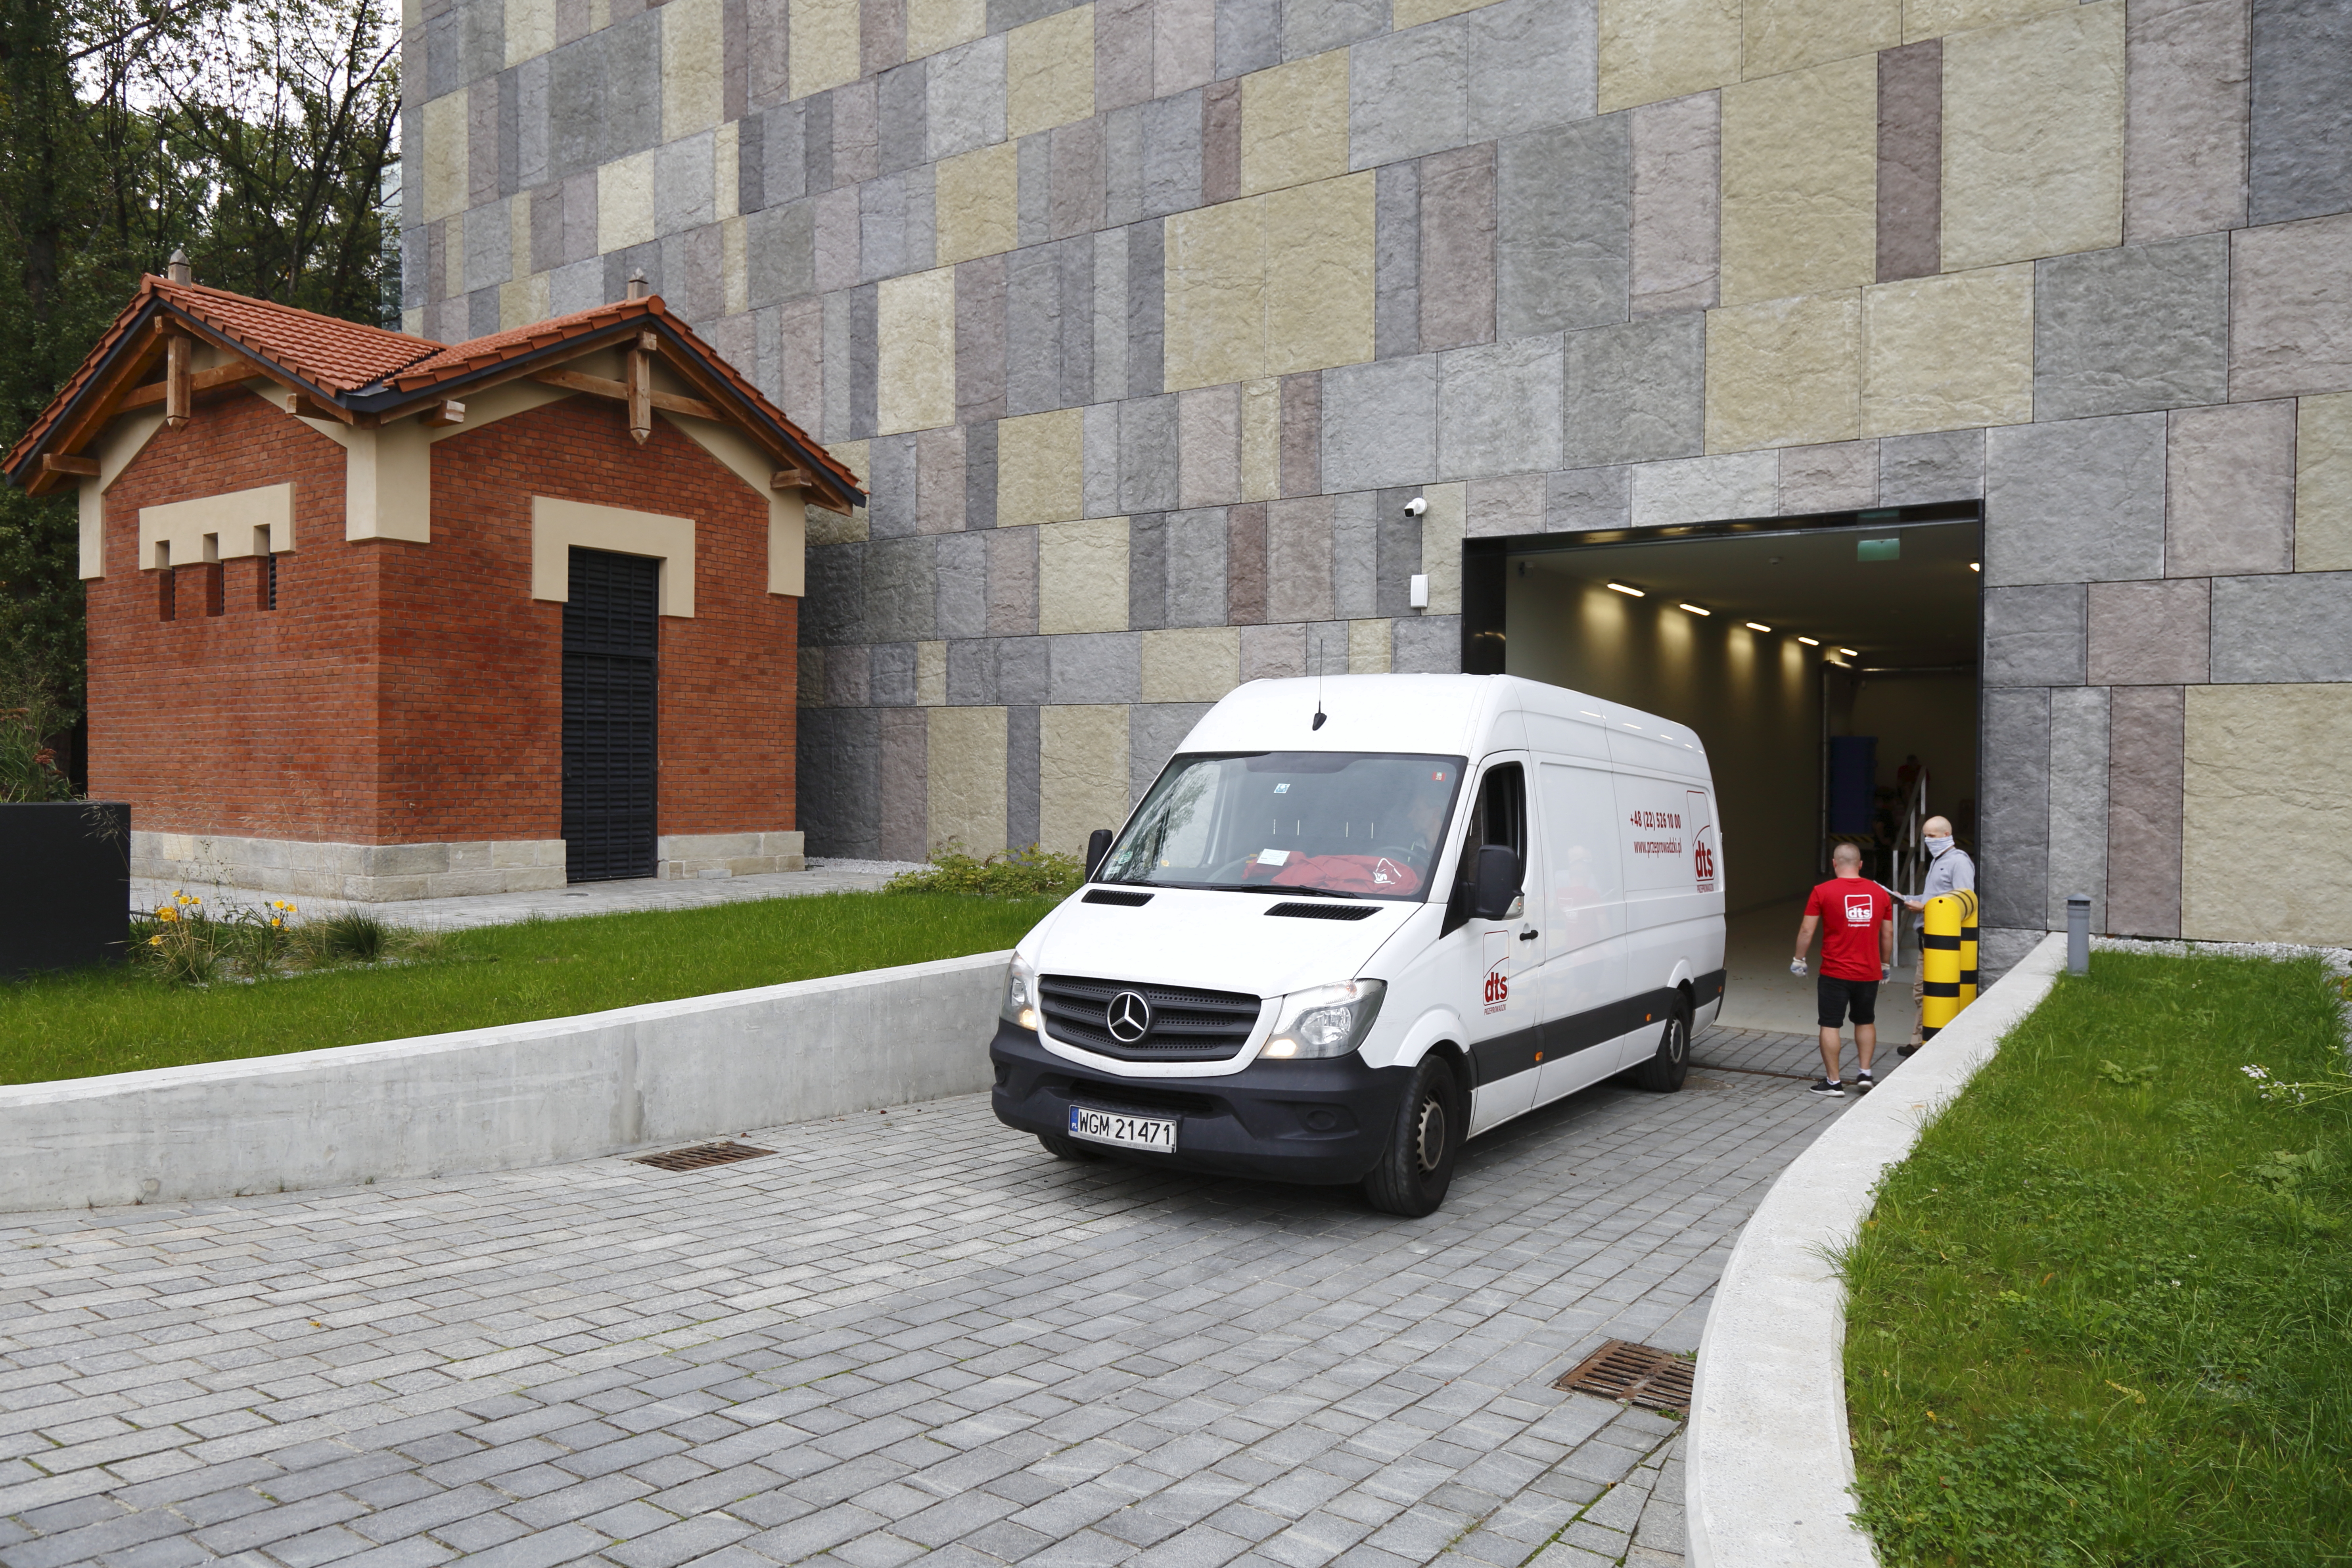 Samochód z transportem archiwaliów wjeżdża do nowego budynku.